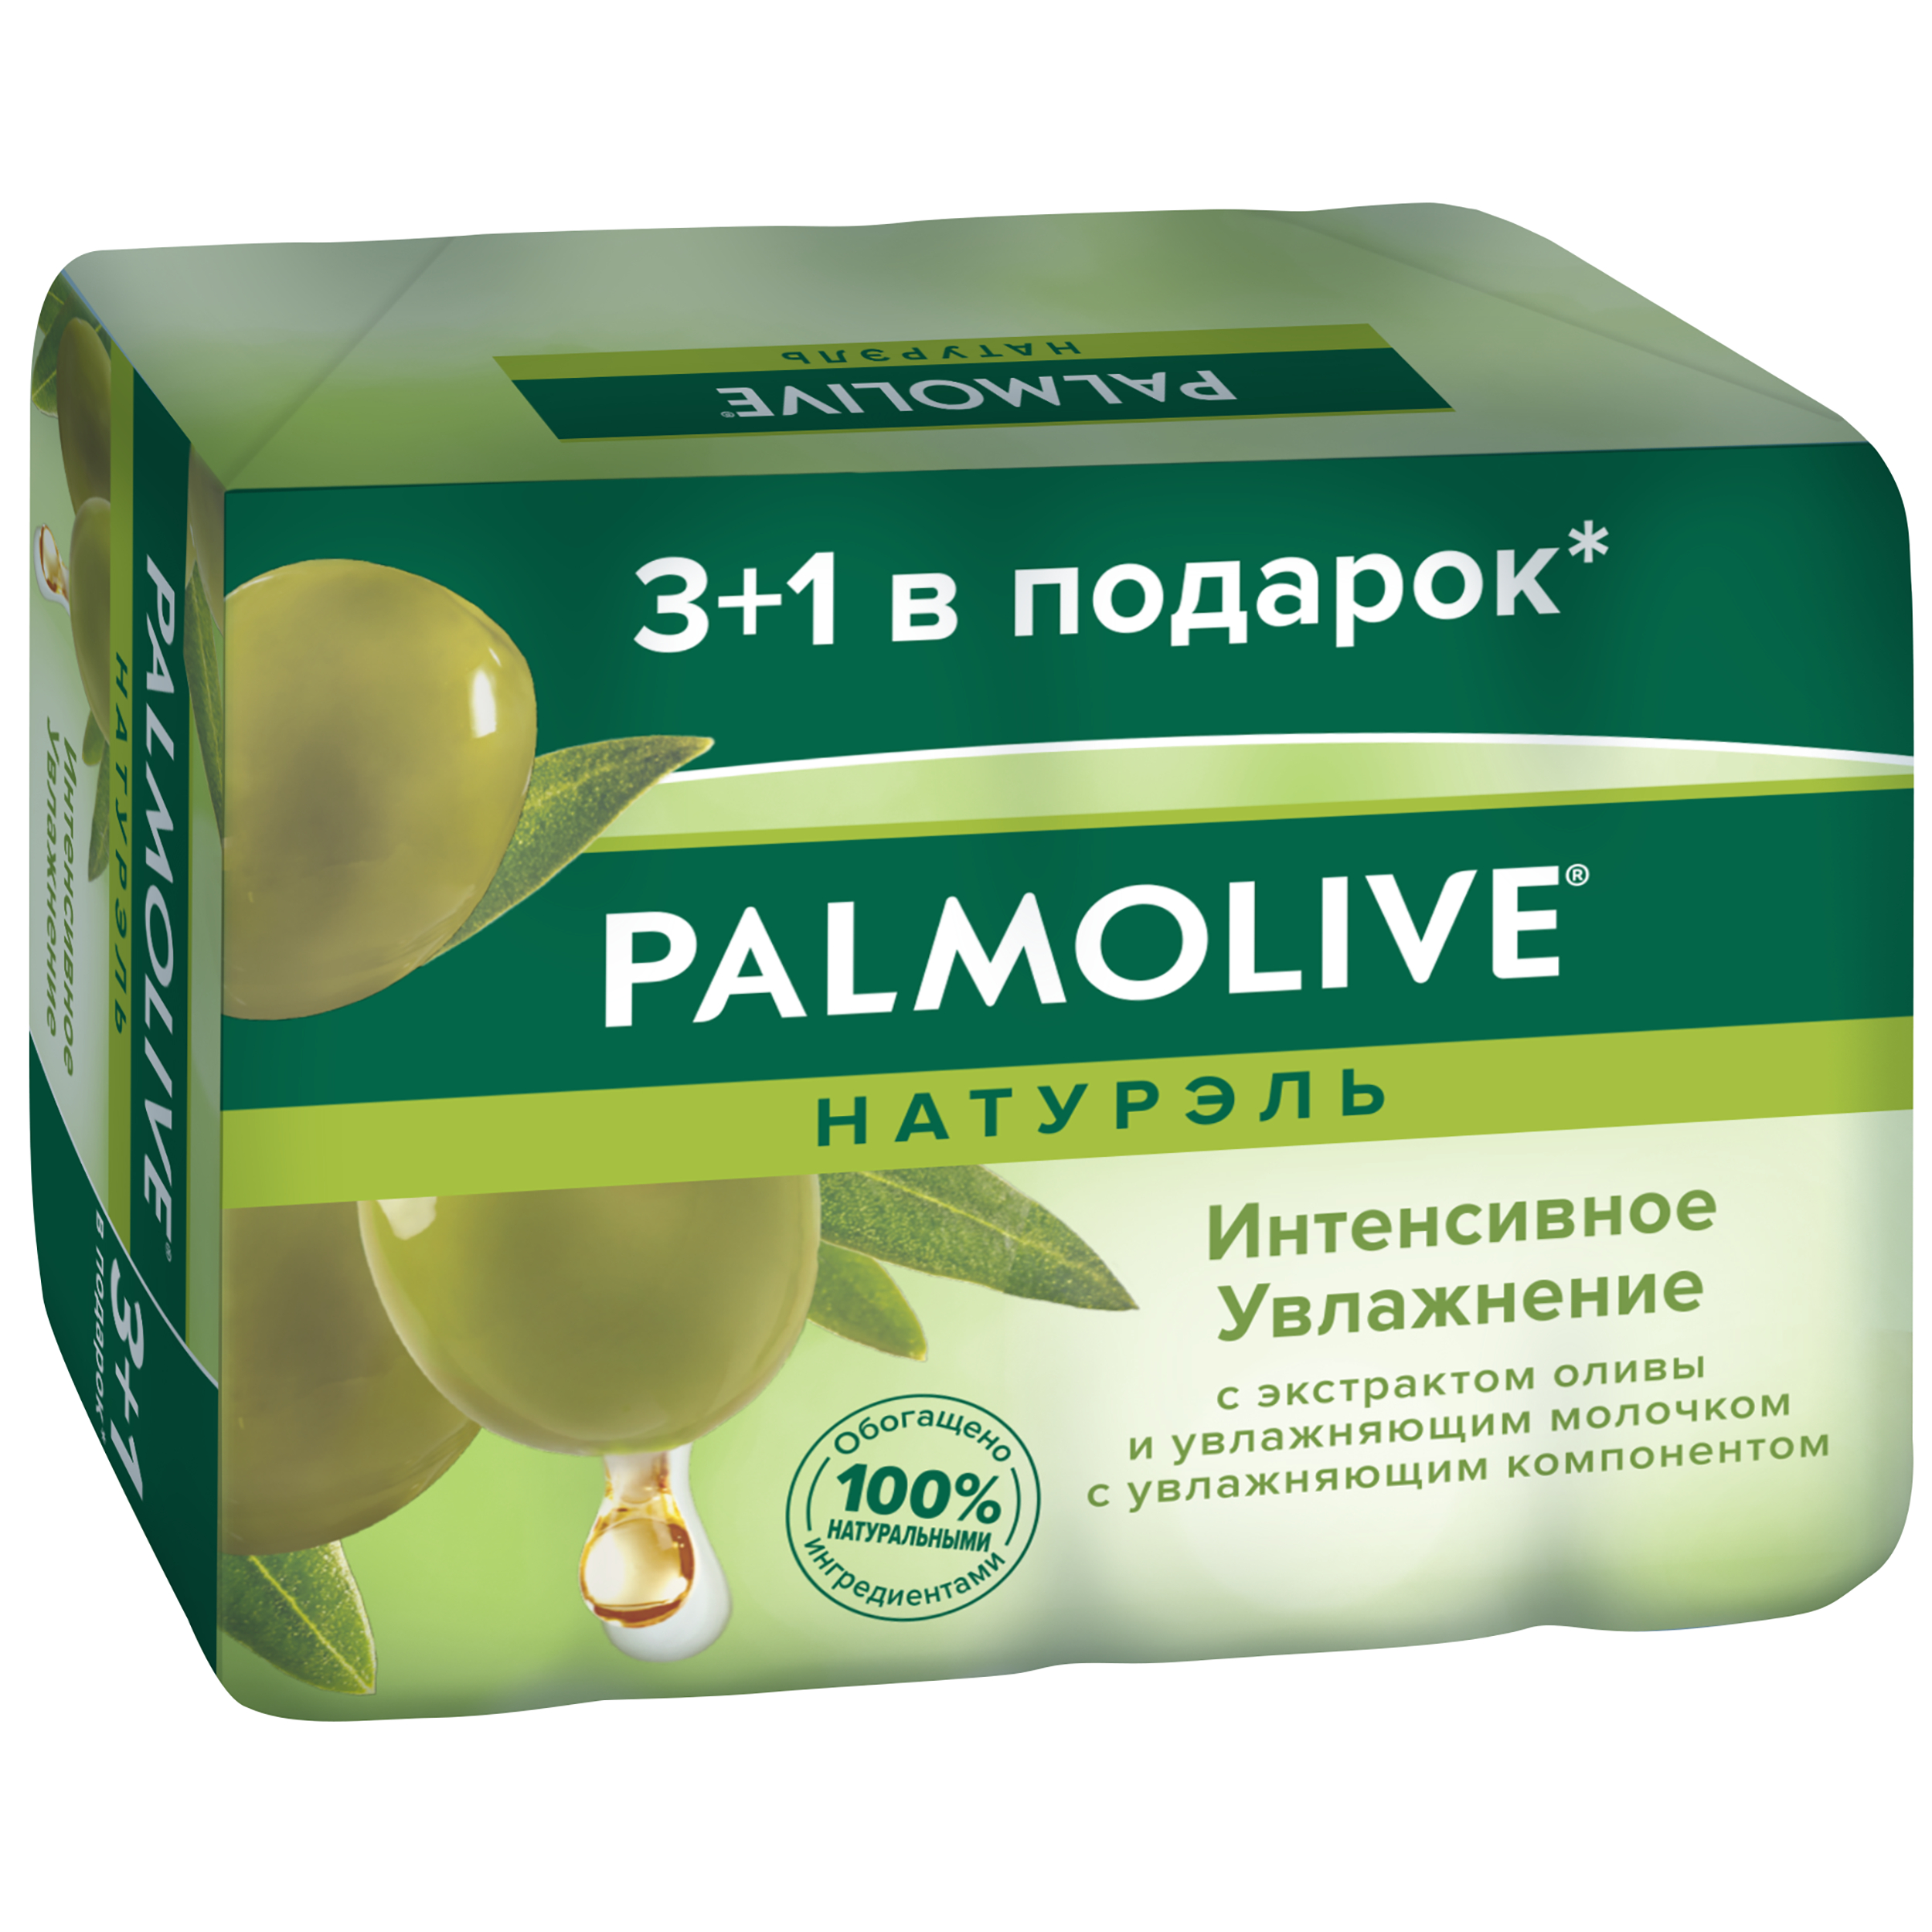 Косметическое мыло Palmolive Натурэль Интенсивное увлажнение с экстрактом оливы 4x90 г